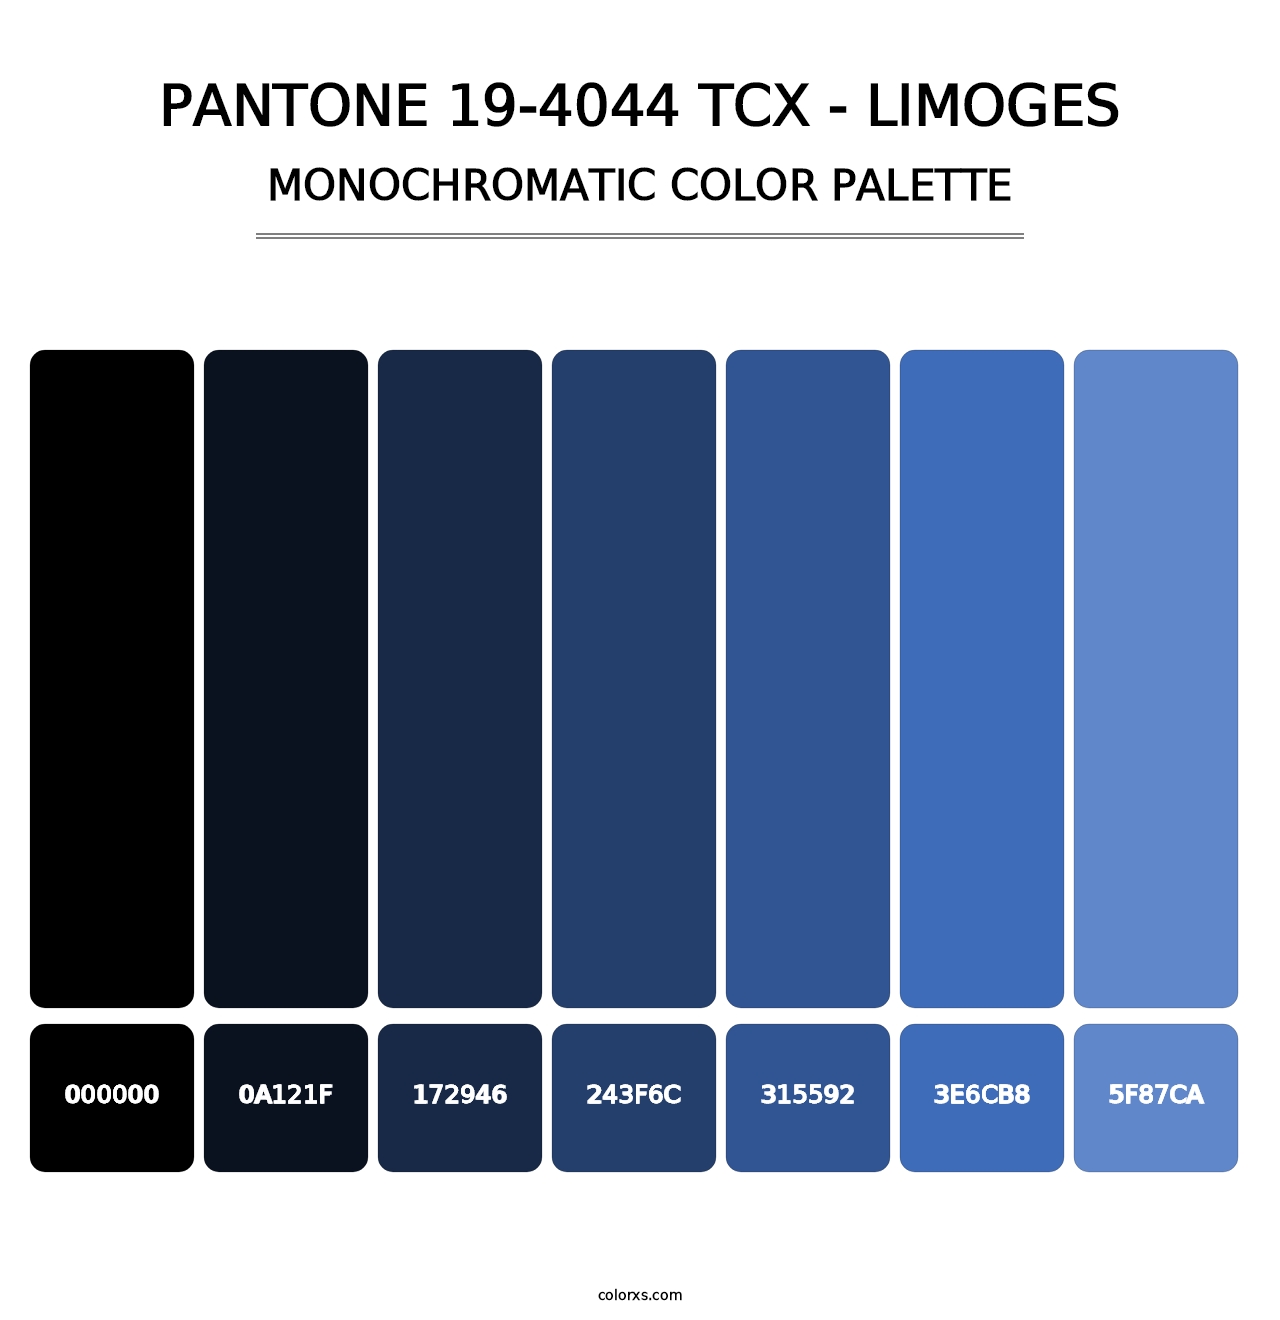 PANTONE 19-4044 TCX - Limoges - Monochromatic Color Palette